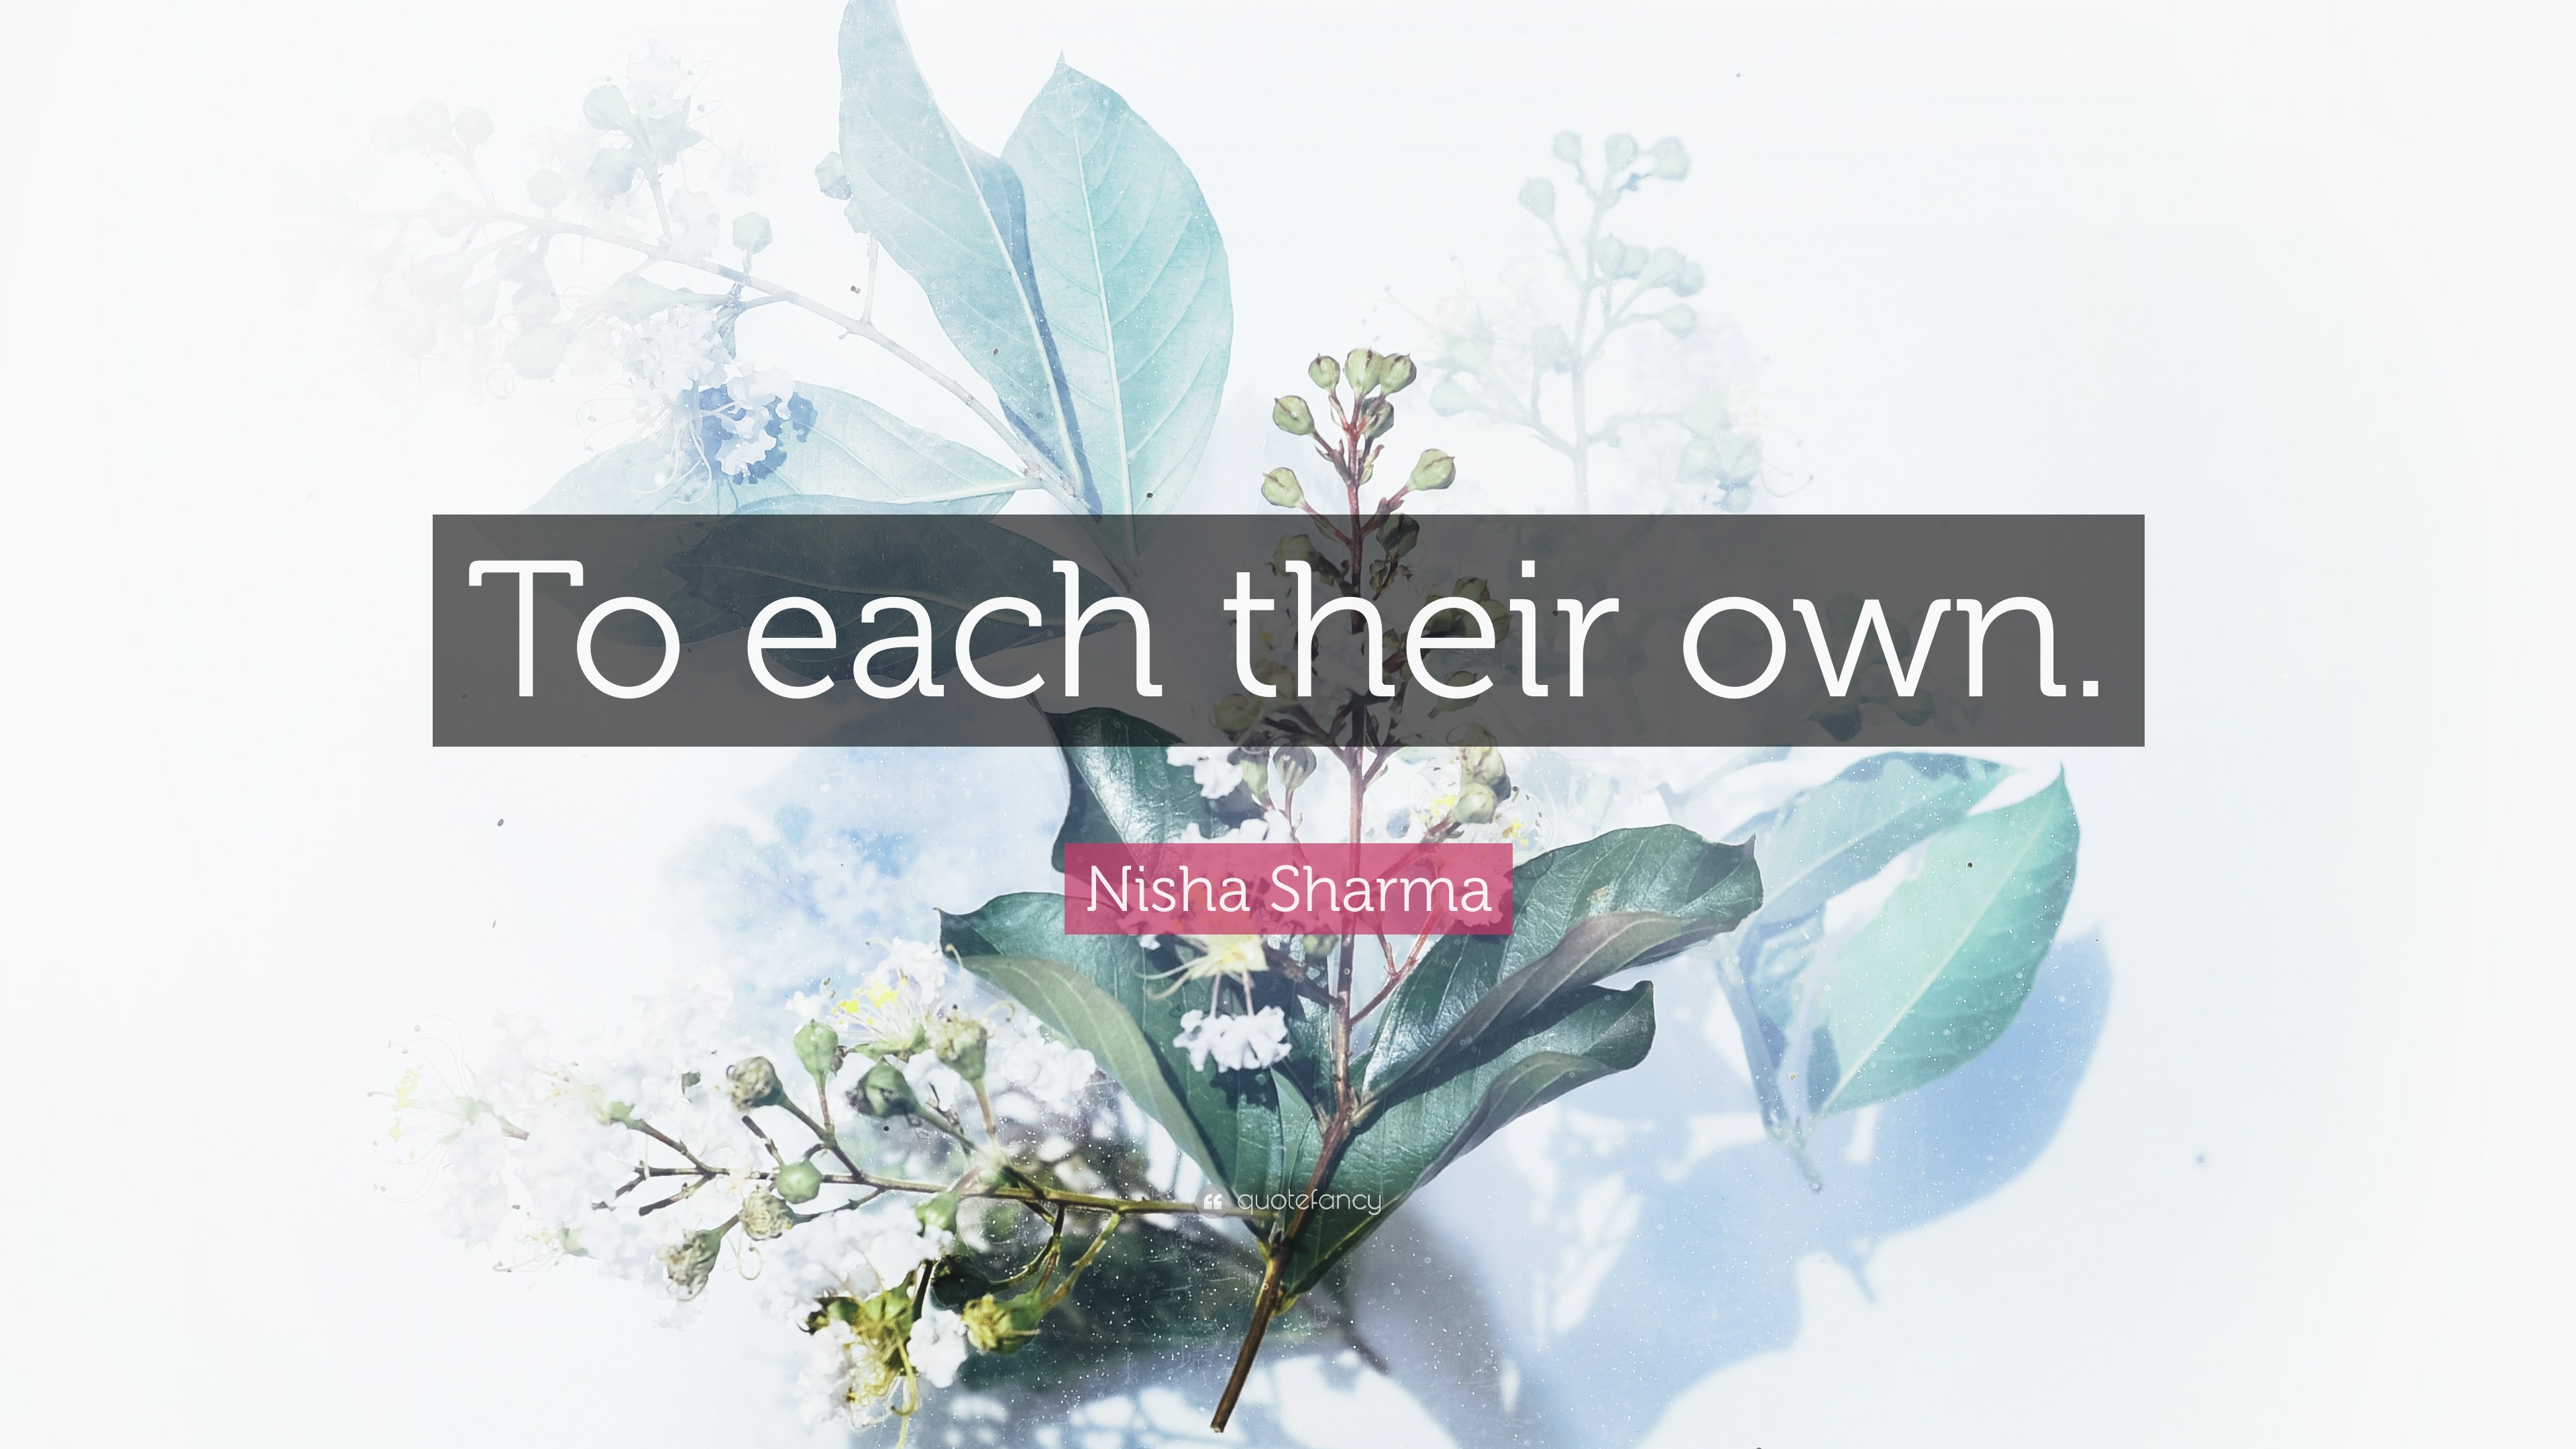 Nisha Sharma Quote: “To each their own.”